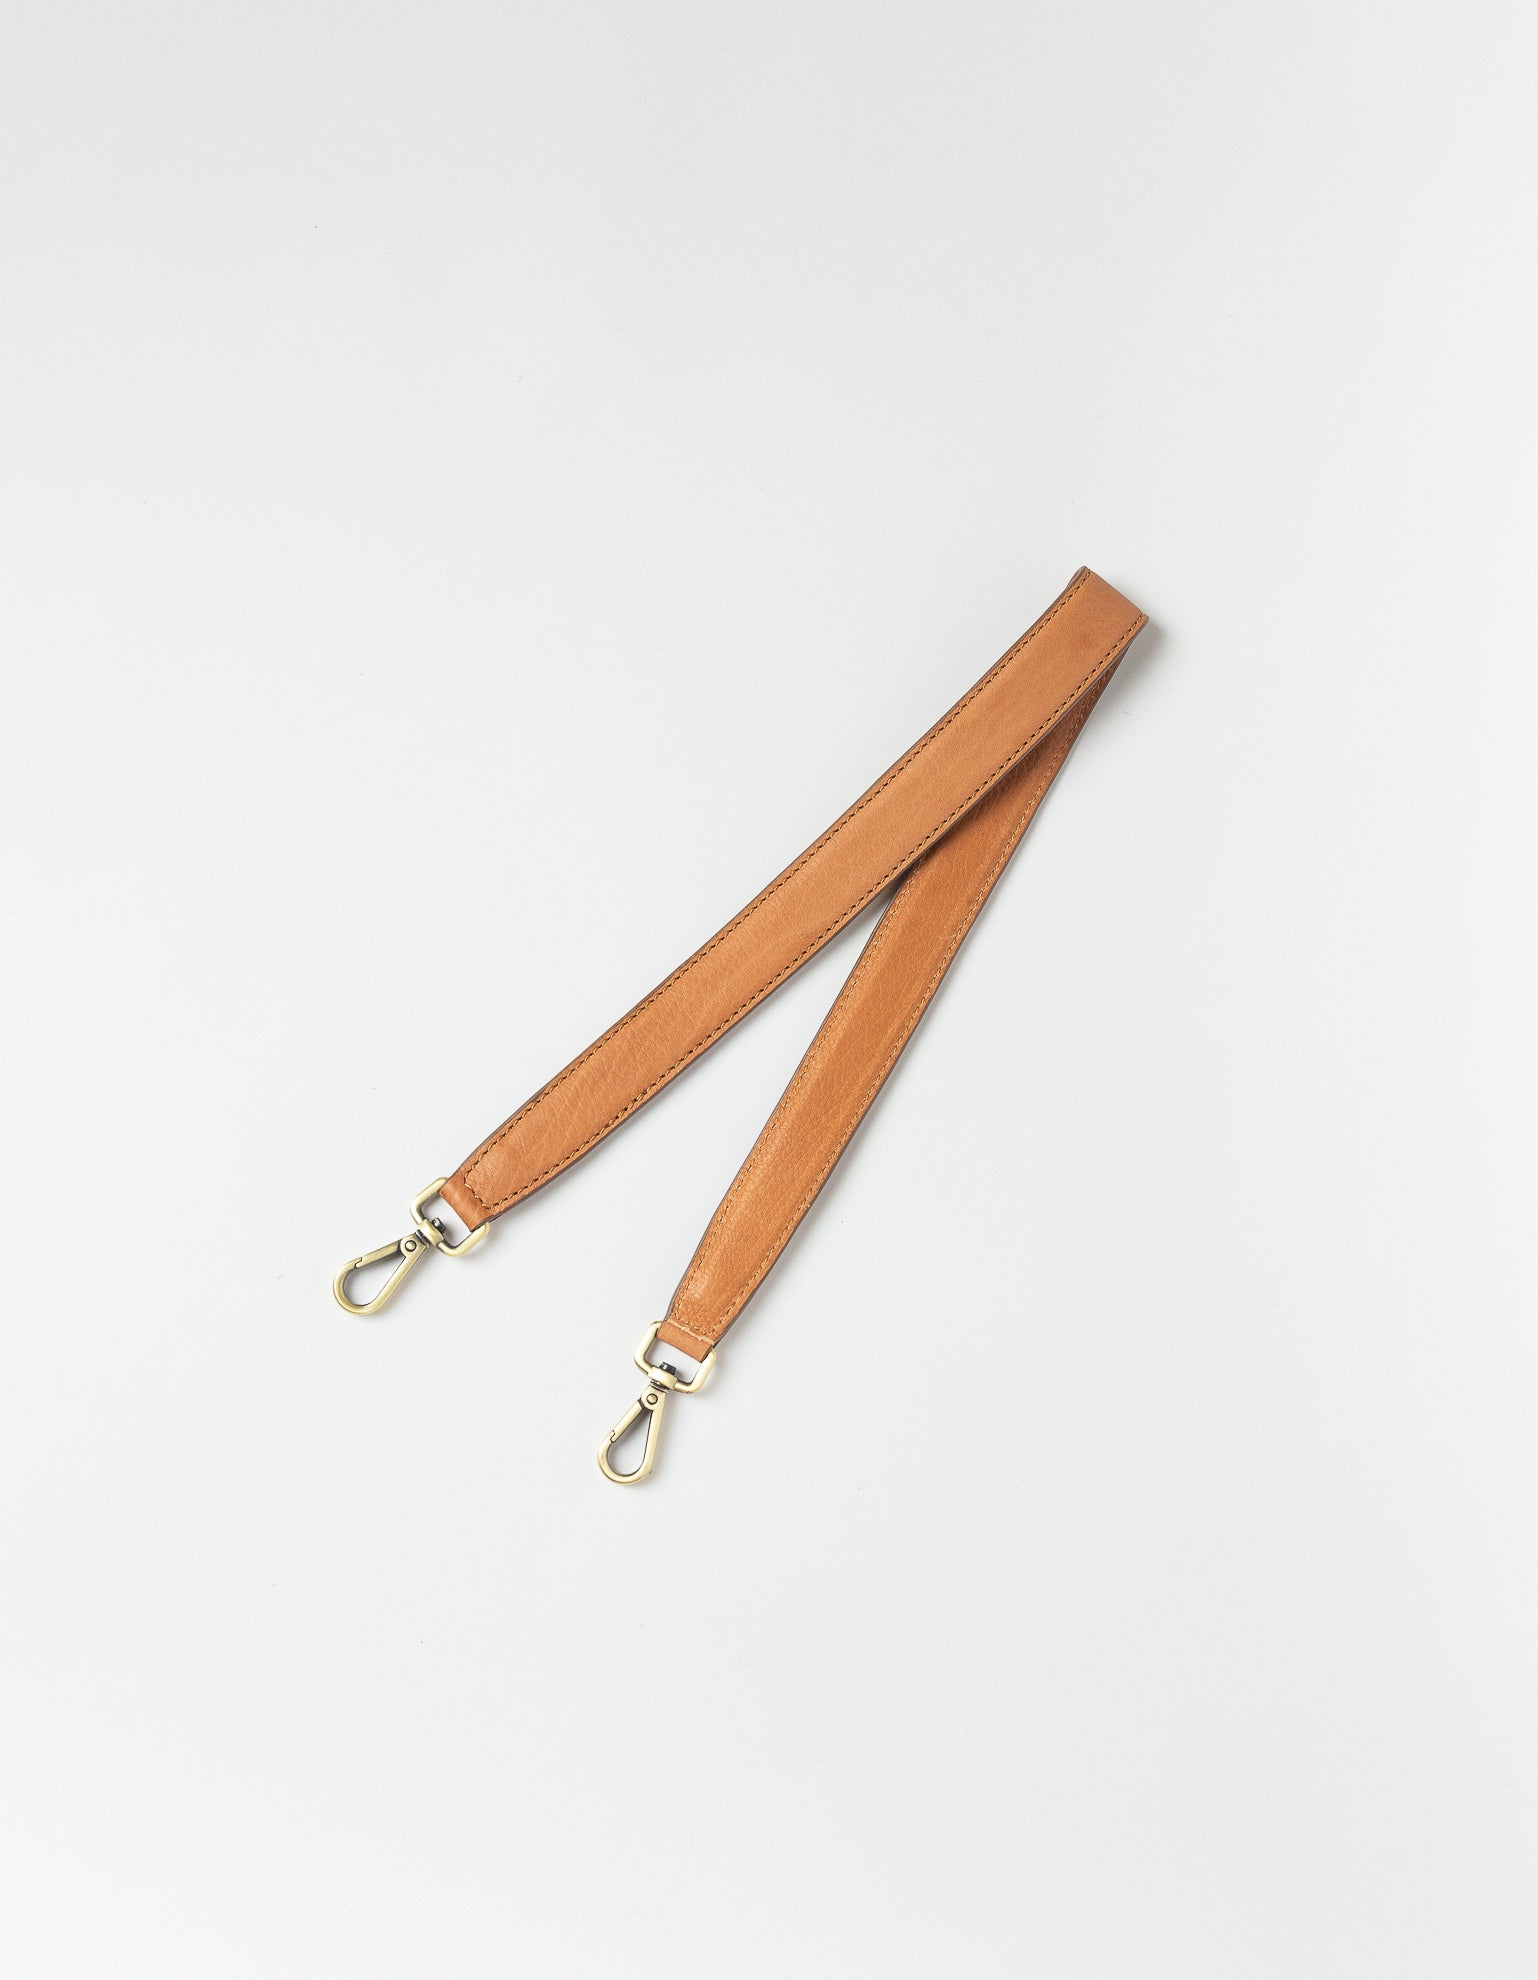 Short shoulder strap wild oak product image